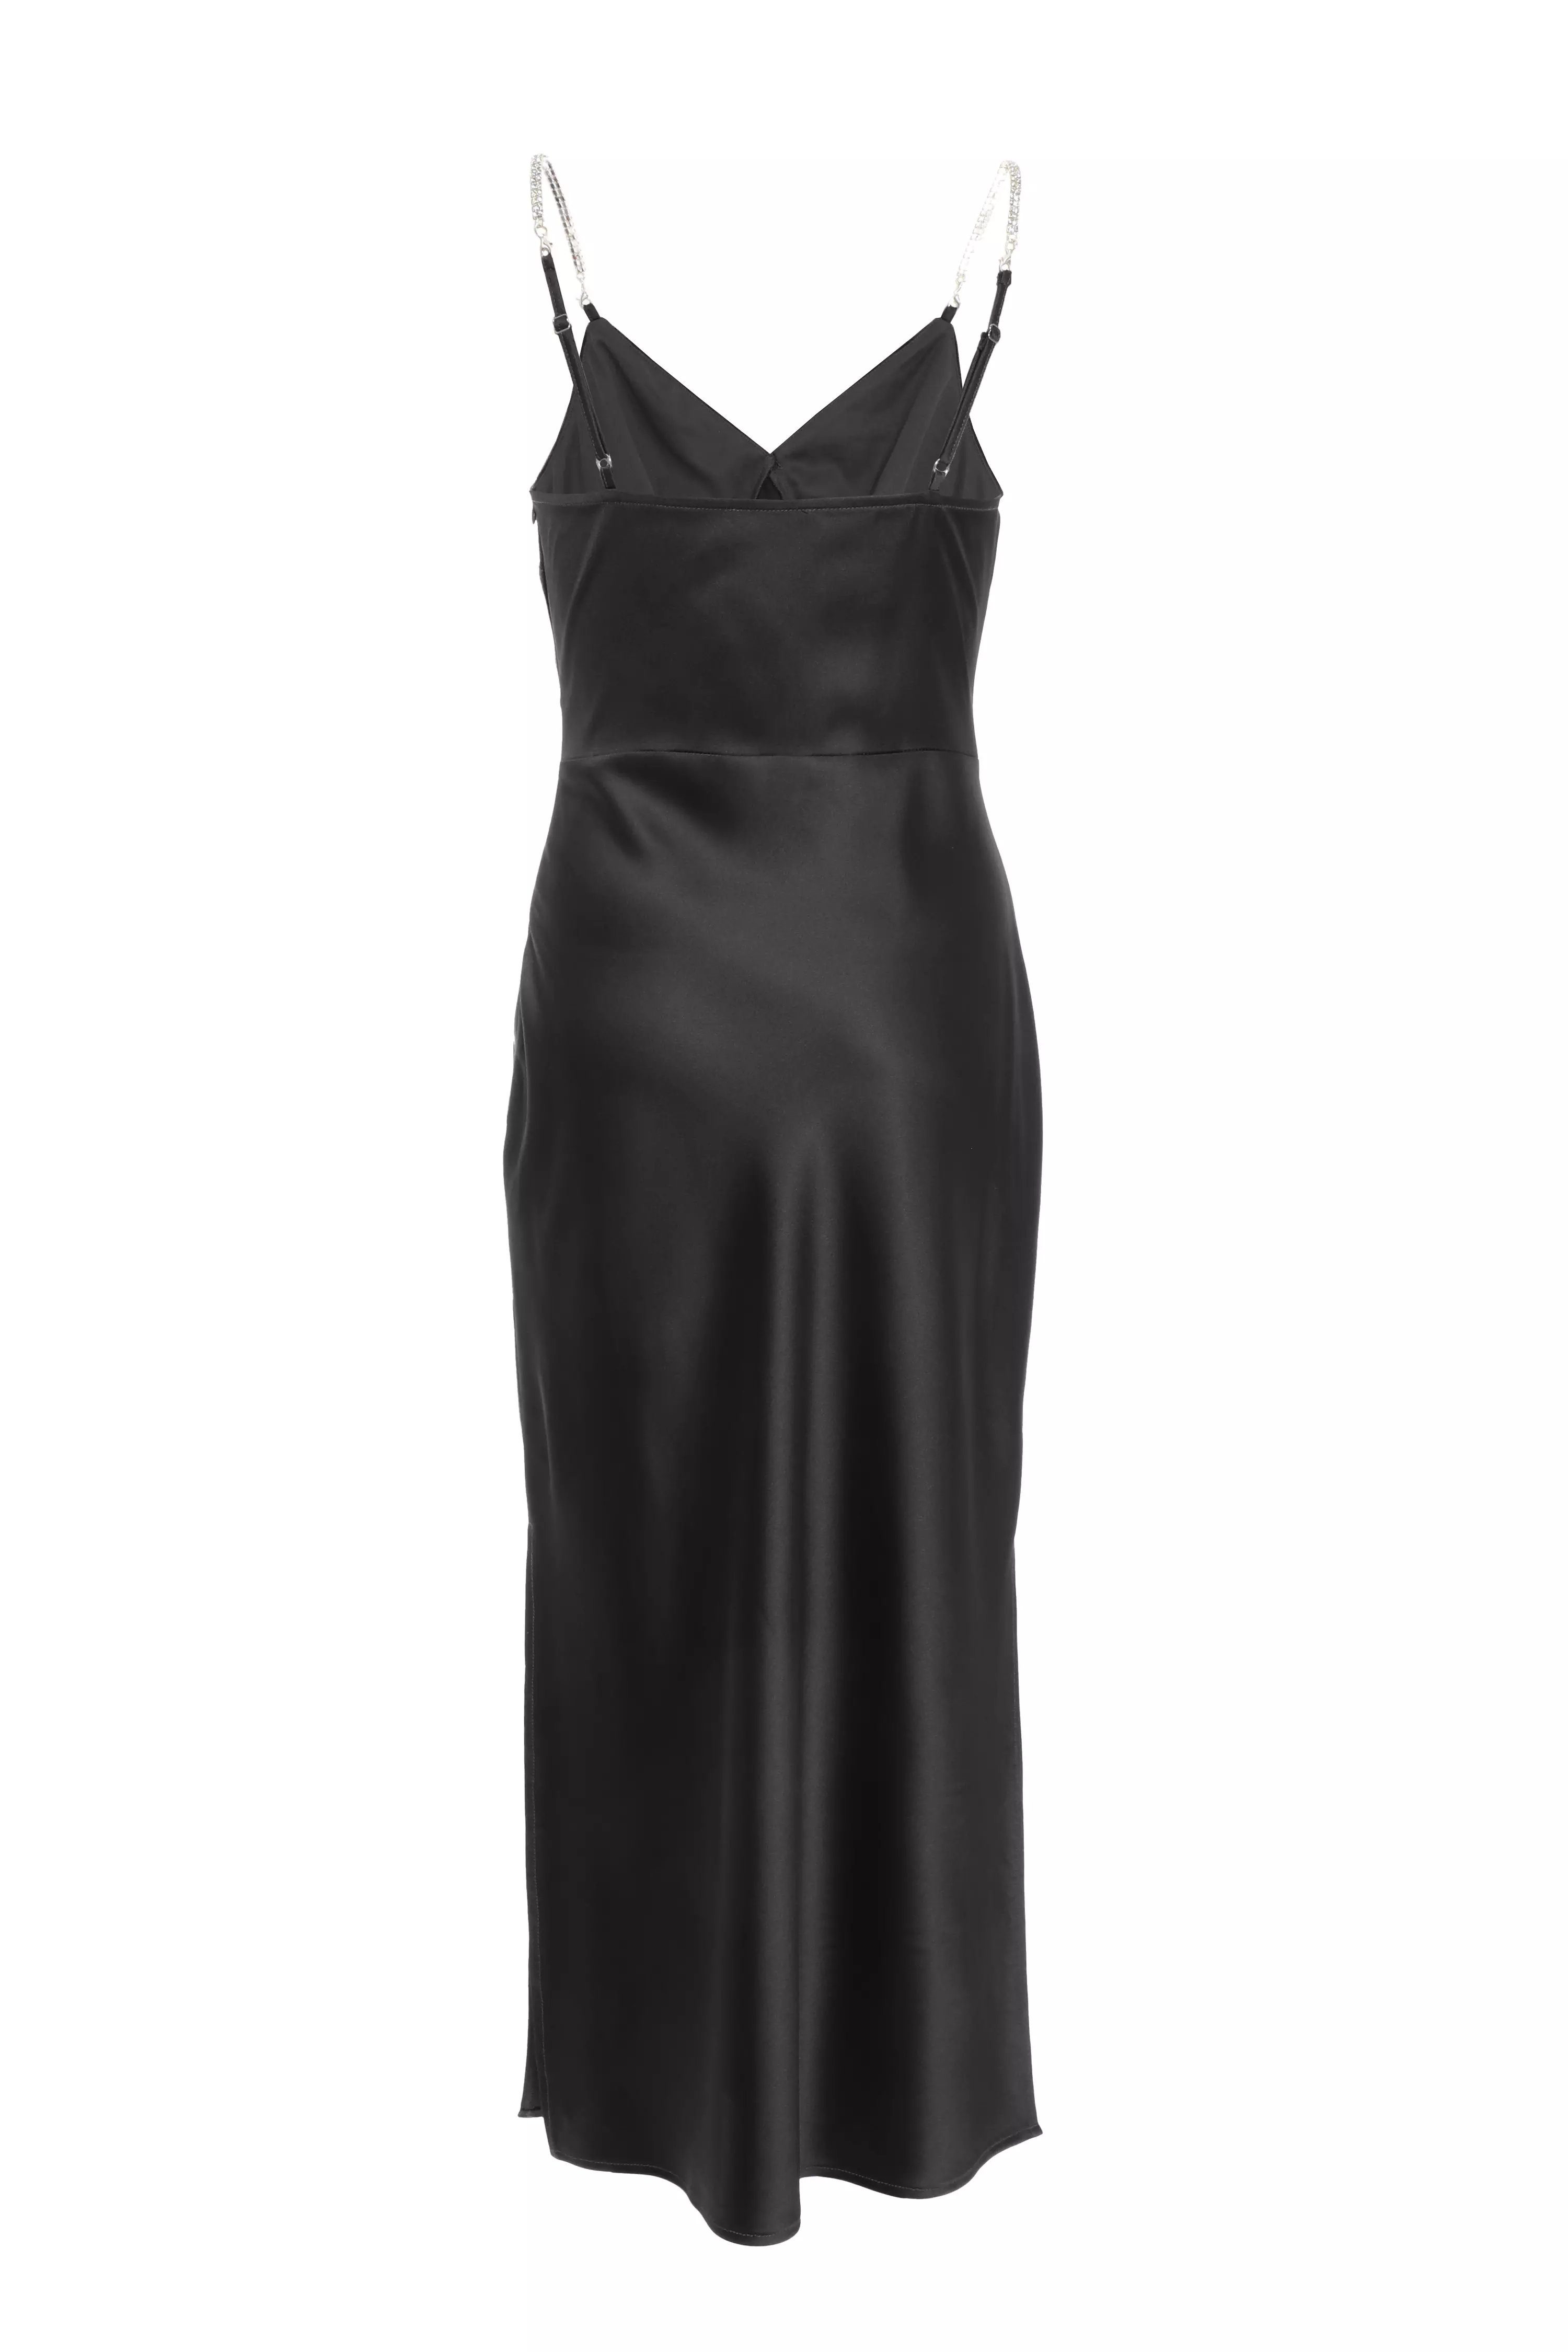 Petite Black Satin Midi Dress